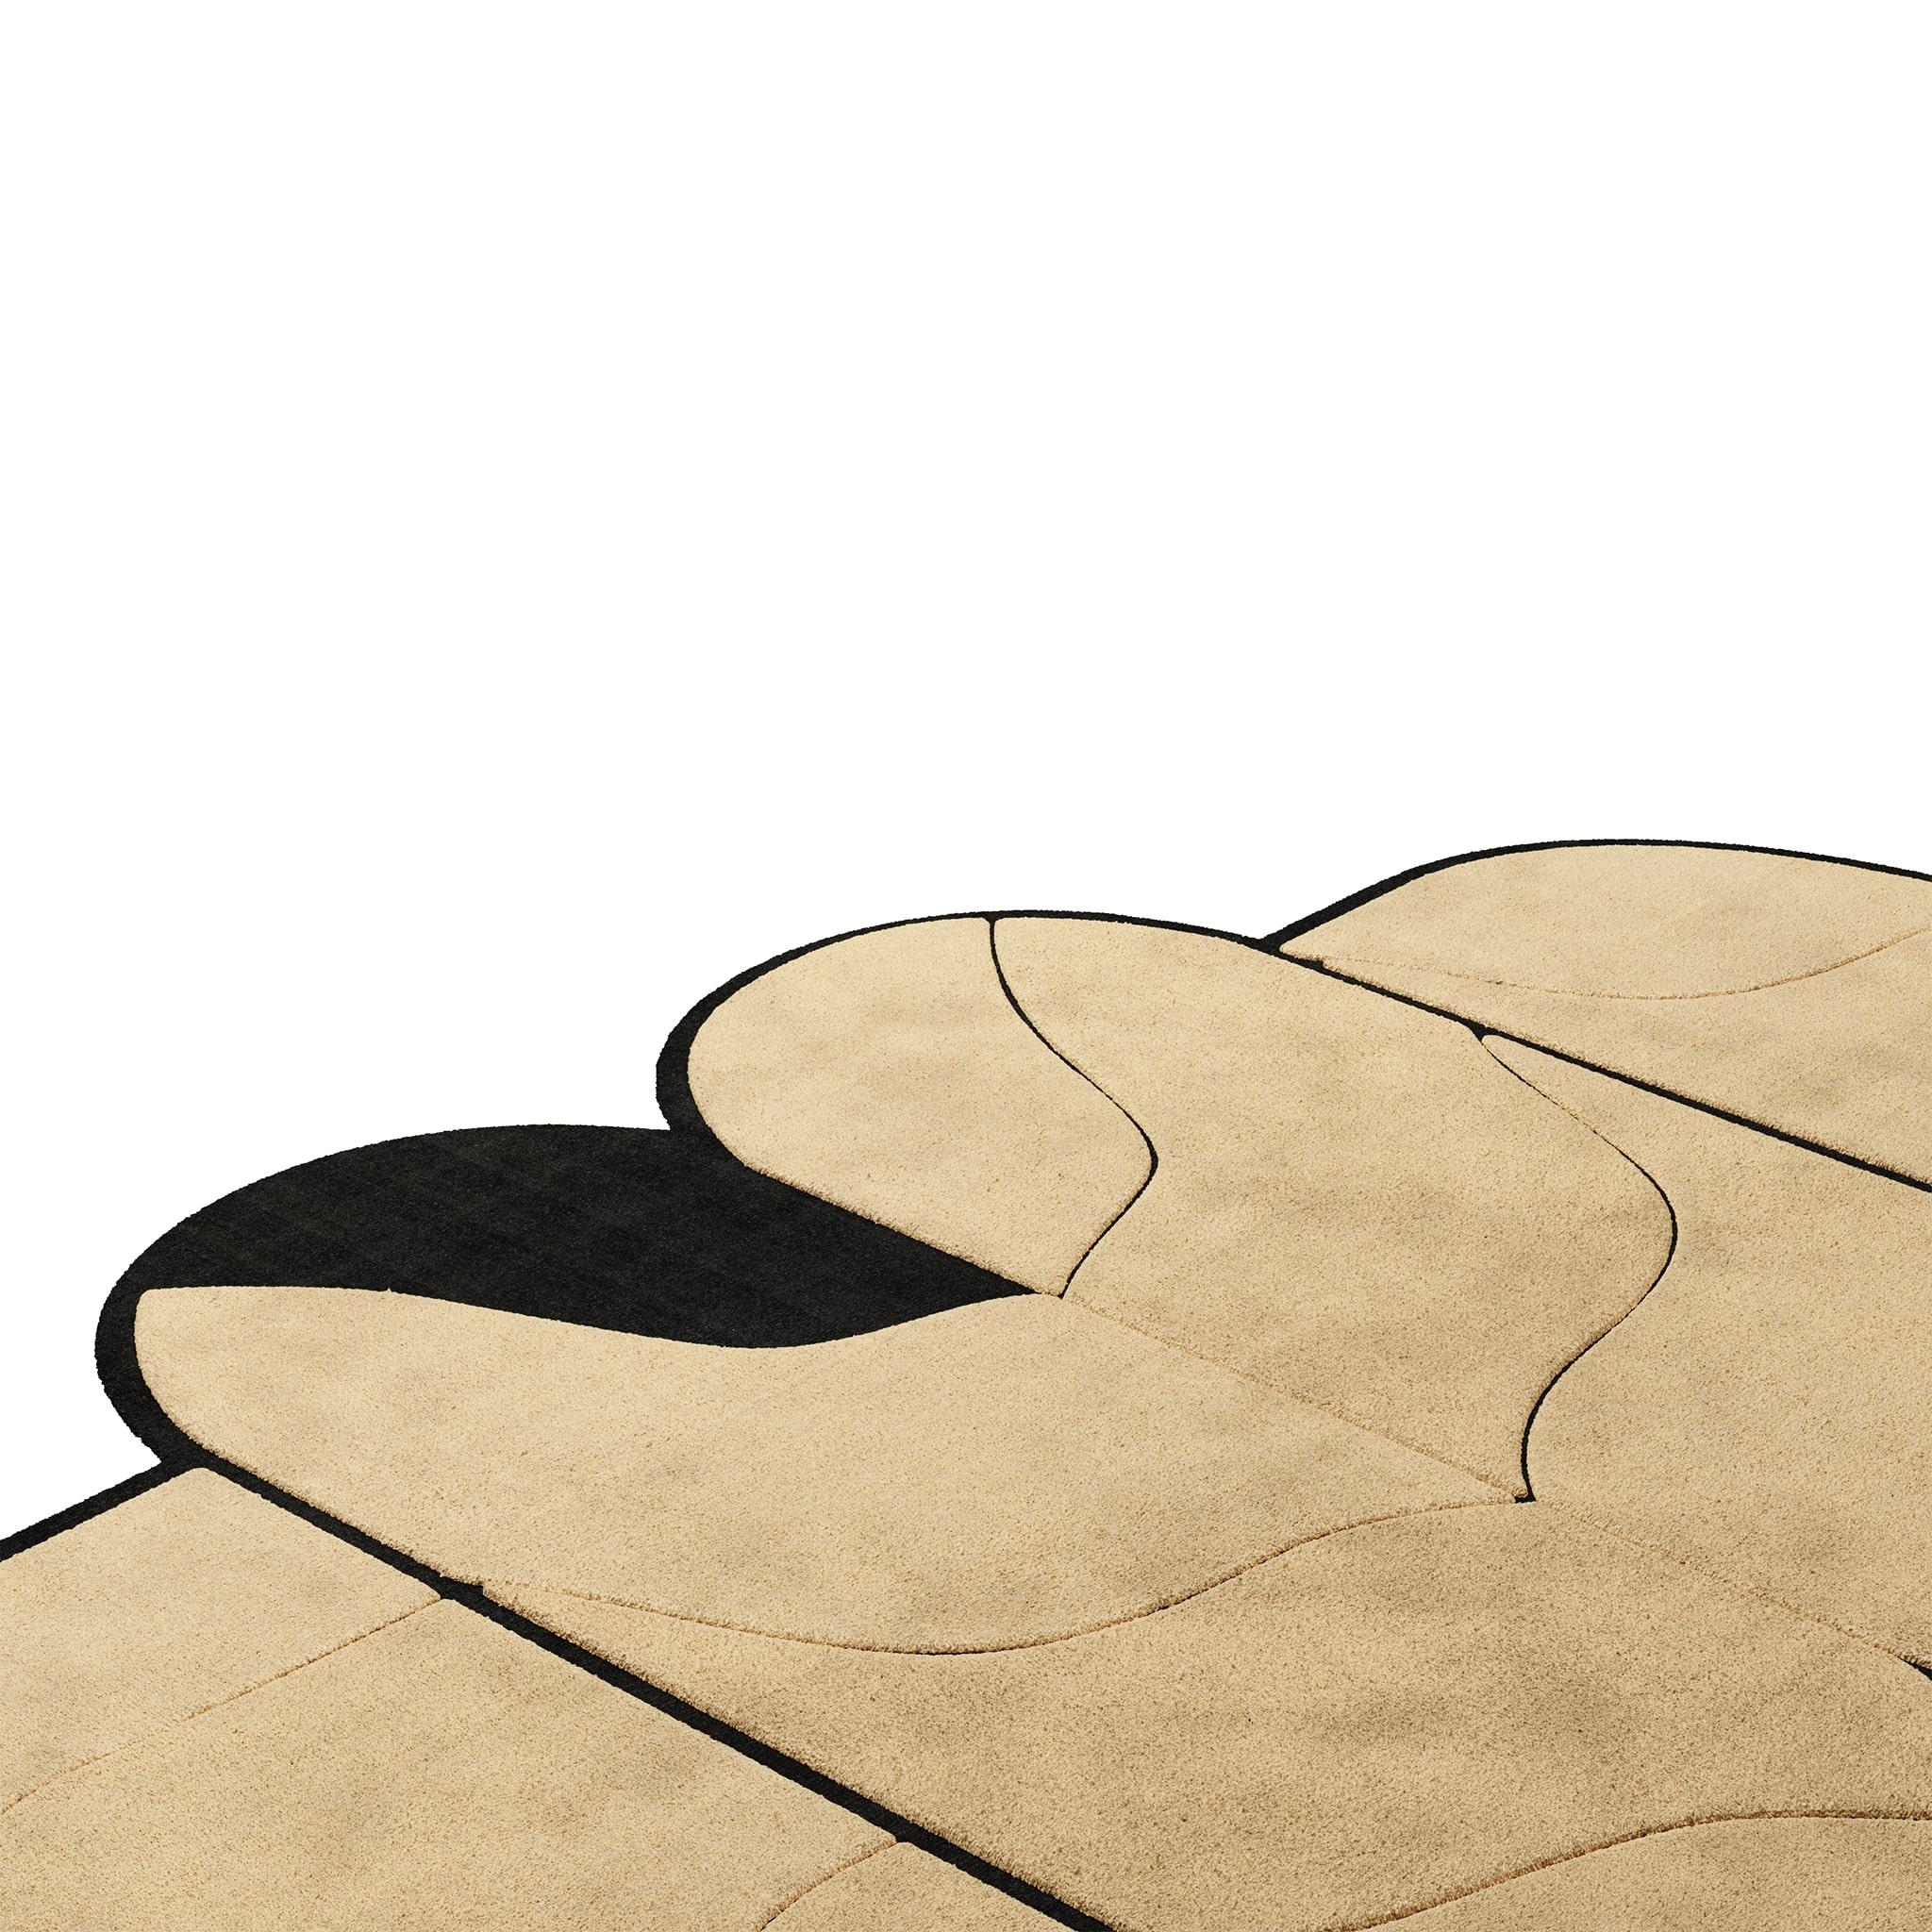 Geometrischer handgetufteter moderner Teppich in Pastellbeige und Schwarz aus der Mitte des Jahrhunderts
Tapis Pastel #04 ist ein pastellfarbener Teppich, der den Stil des Mid-Century Modern mit dem Memphis Design vermischt. Die Kombination aus